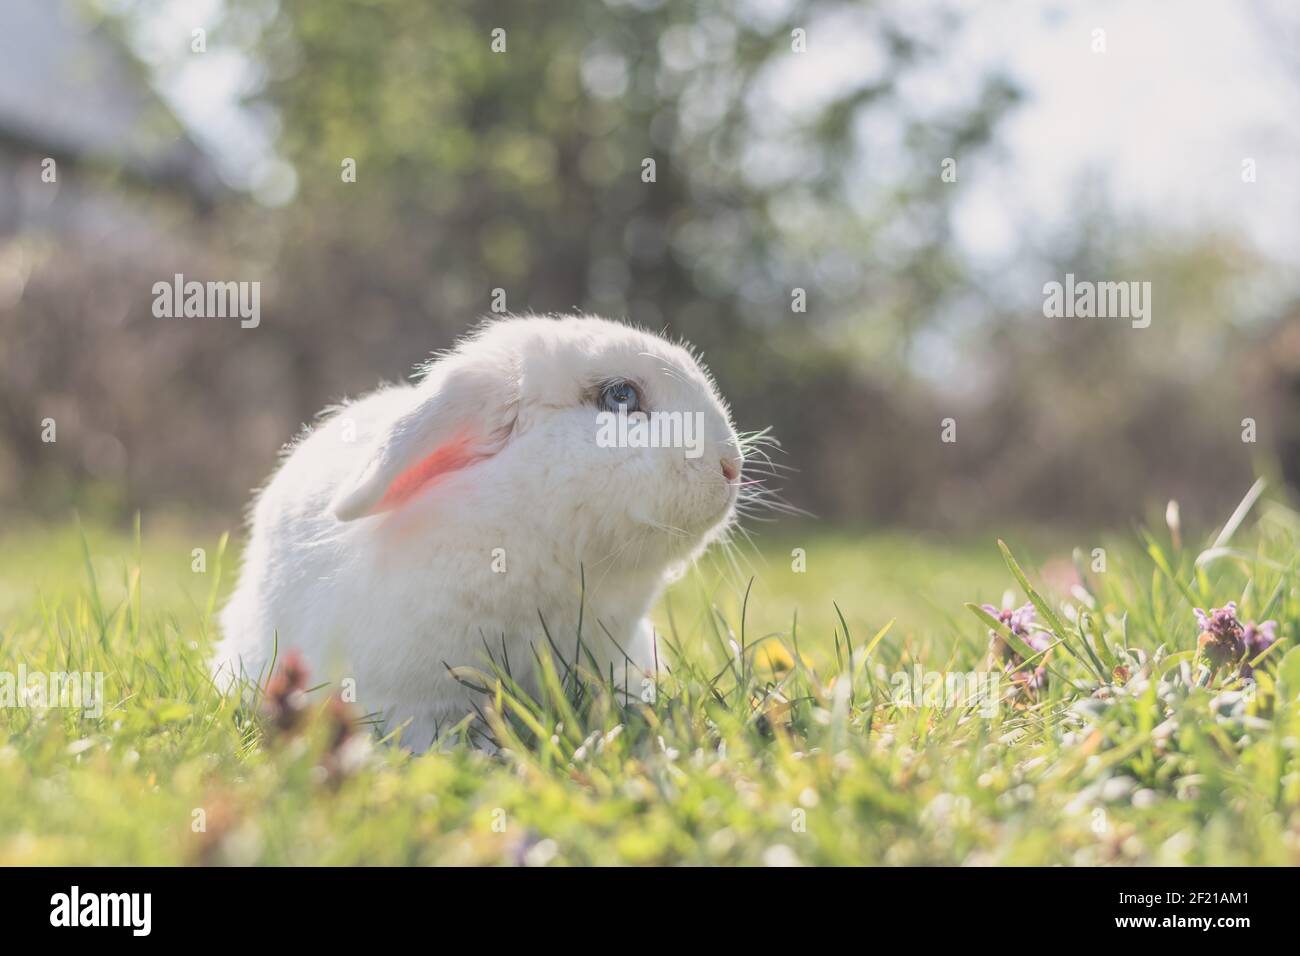 Niedliches kleines weißes Kaninchen im grünen Gras im Garten Stockfoto